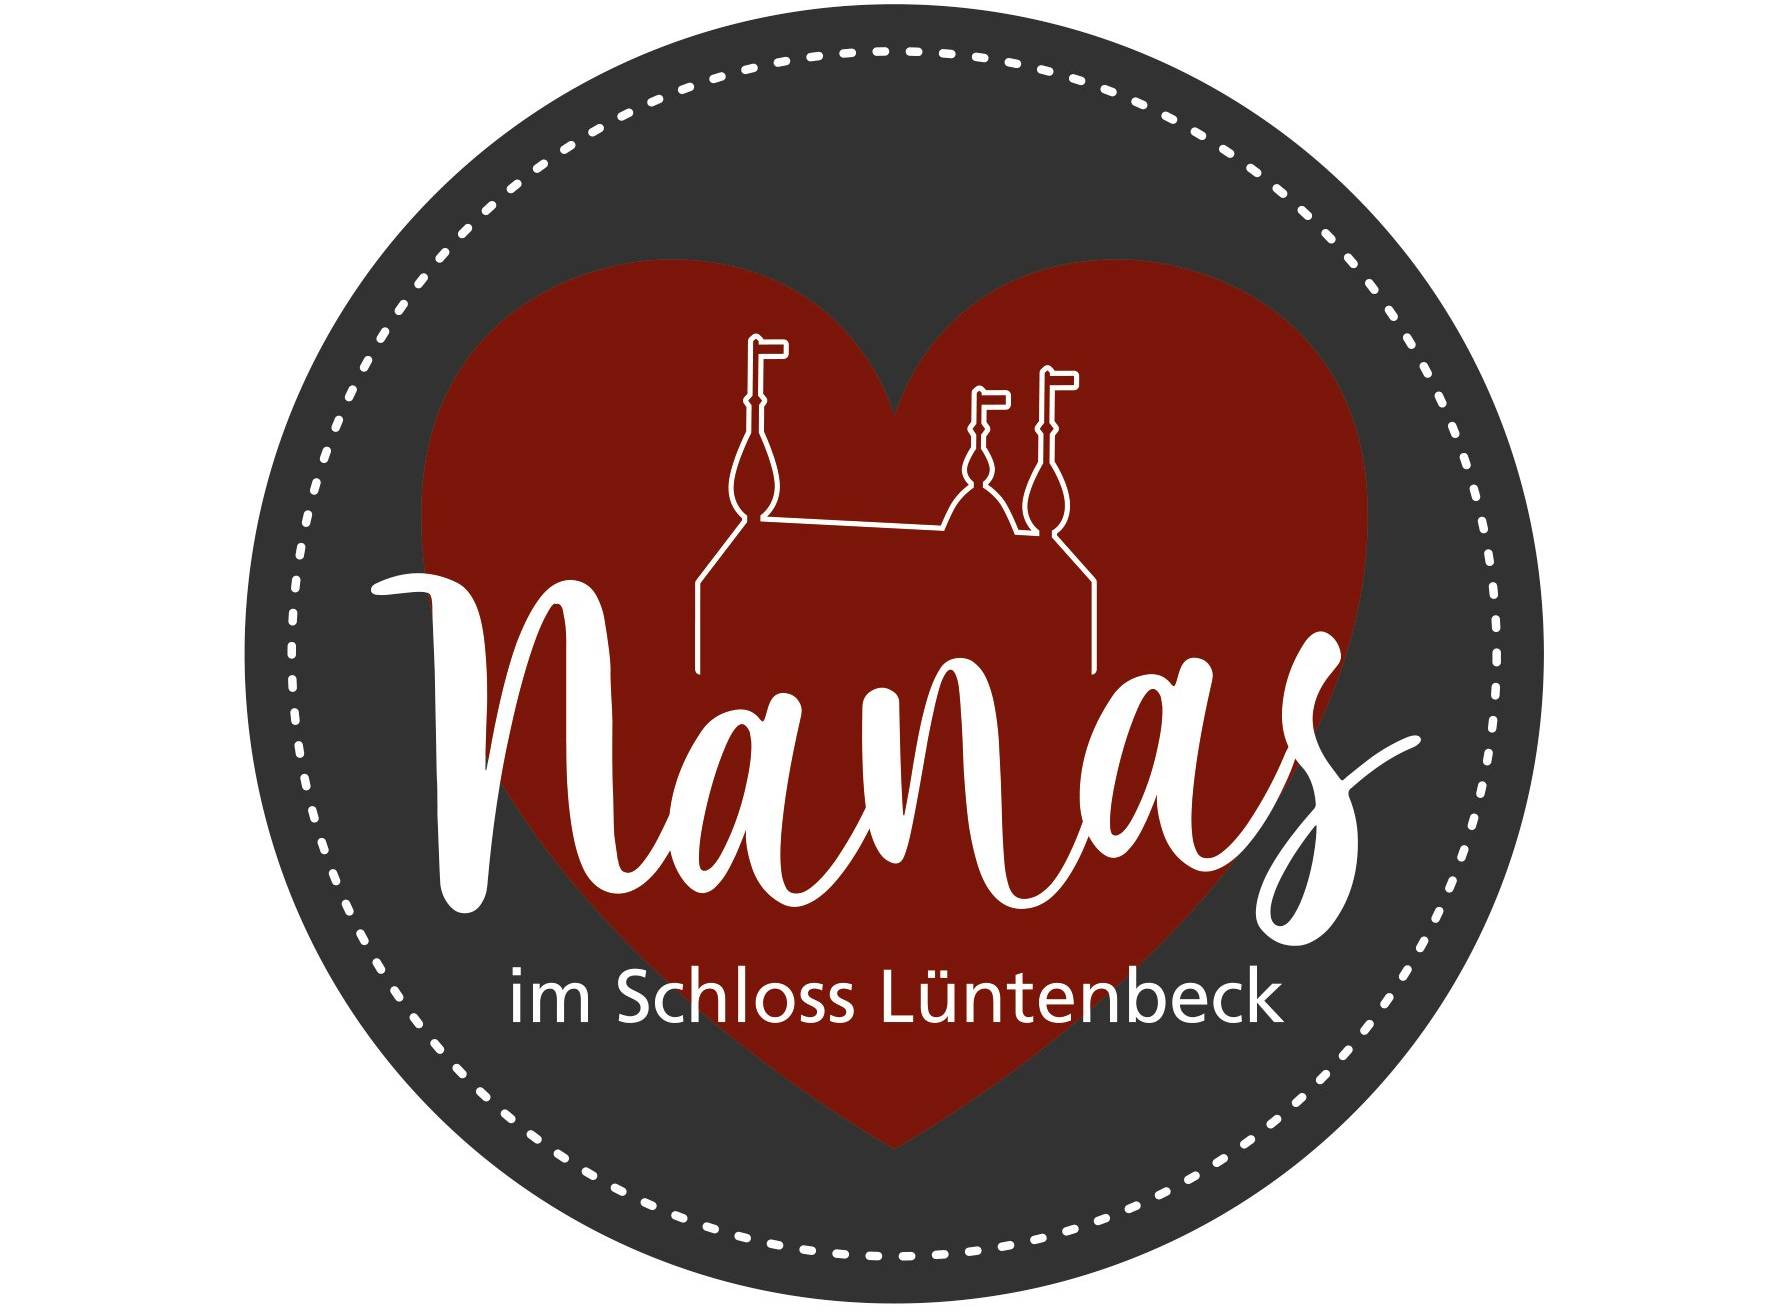  Das „Nanas“ im Schloss Lüntenbeck.  